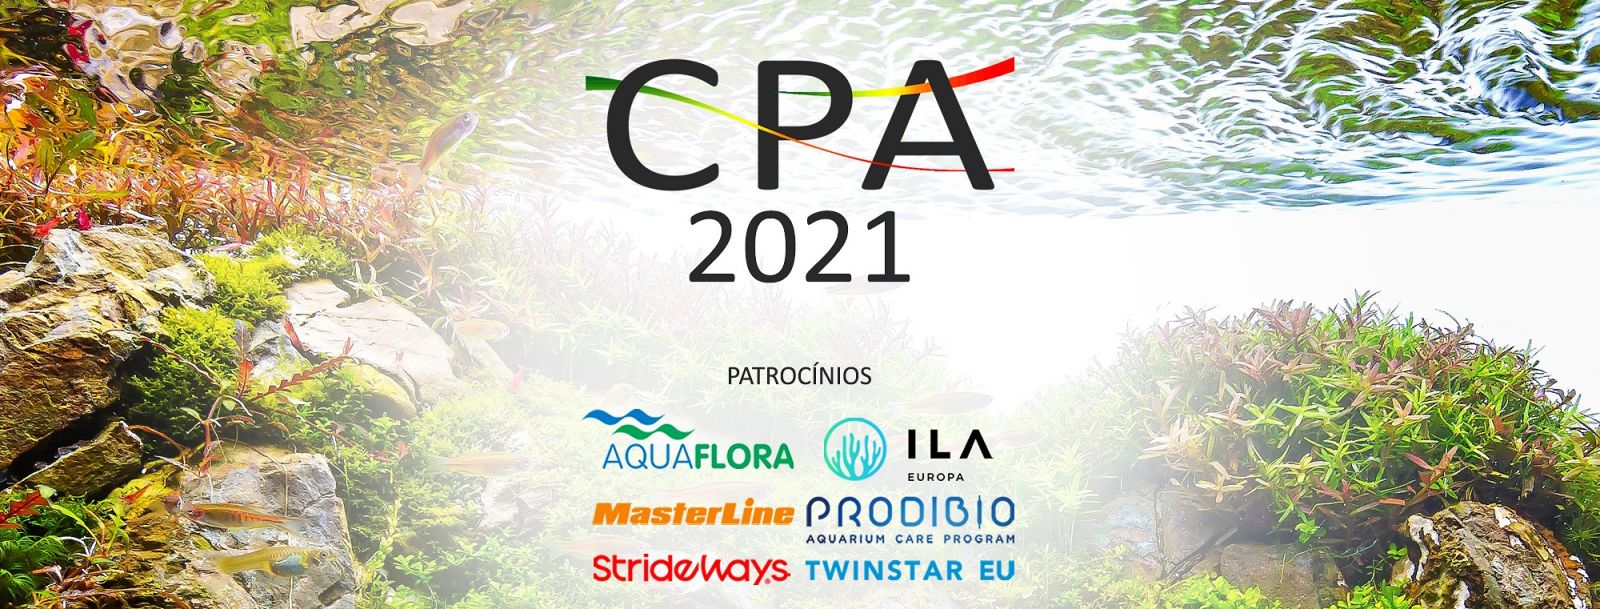 CPA - Concurso Português de Aquascaping